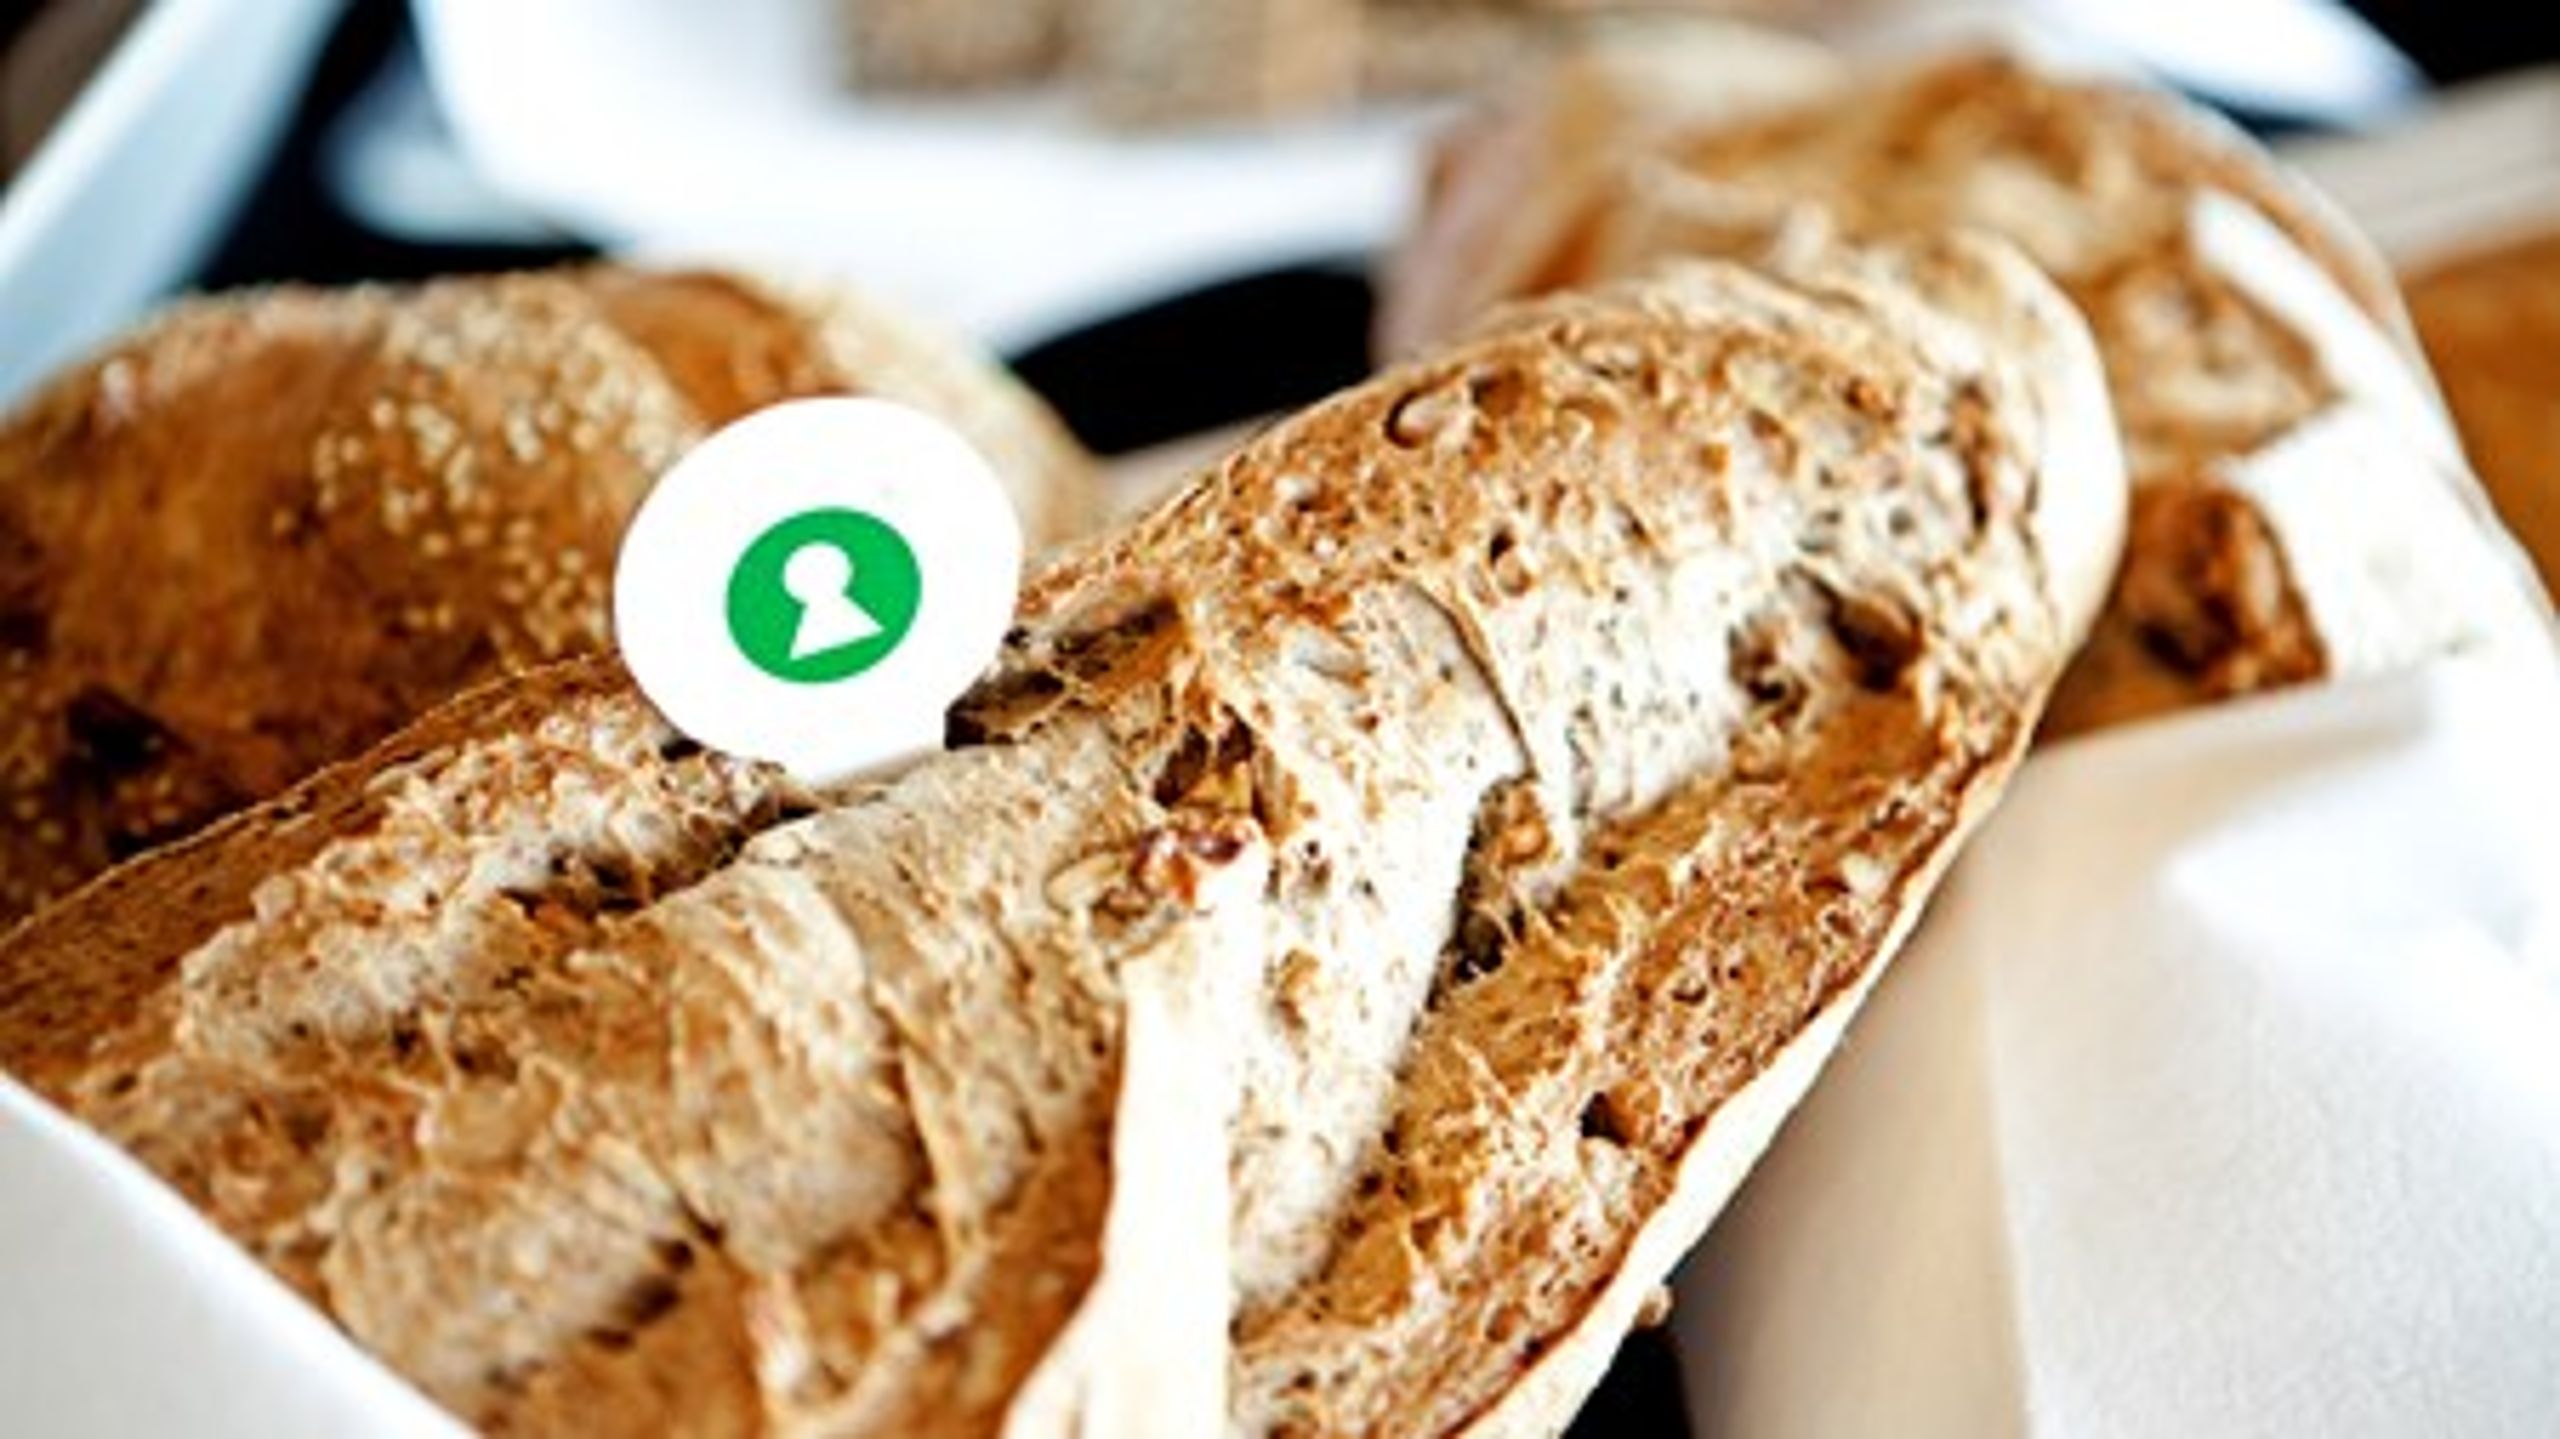 Uindpakket brød er blandt de nye varer, der kan nøglehulsmærkes, mens blandt andet spegepølsen fremover må se langt efter det lille grønne mærke.